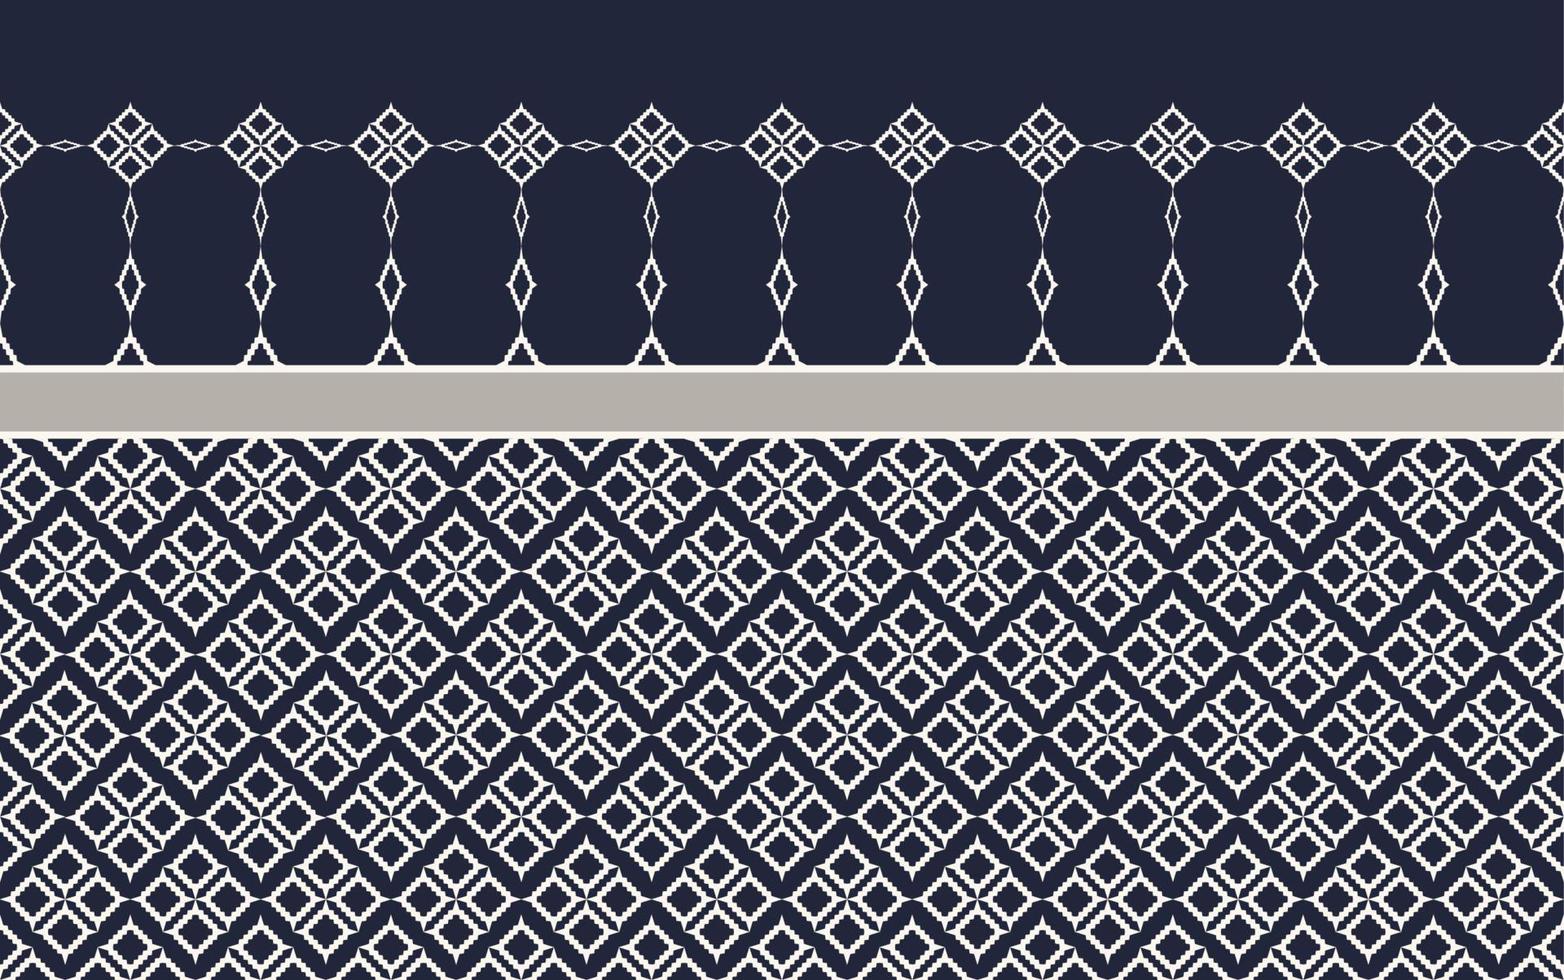 ikat geometrischer traditioneller blaugrauer farbnahtloser musterhintergrund. verwendung für stoff, textilien, dekorationselemente, verpackung. vektor